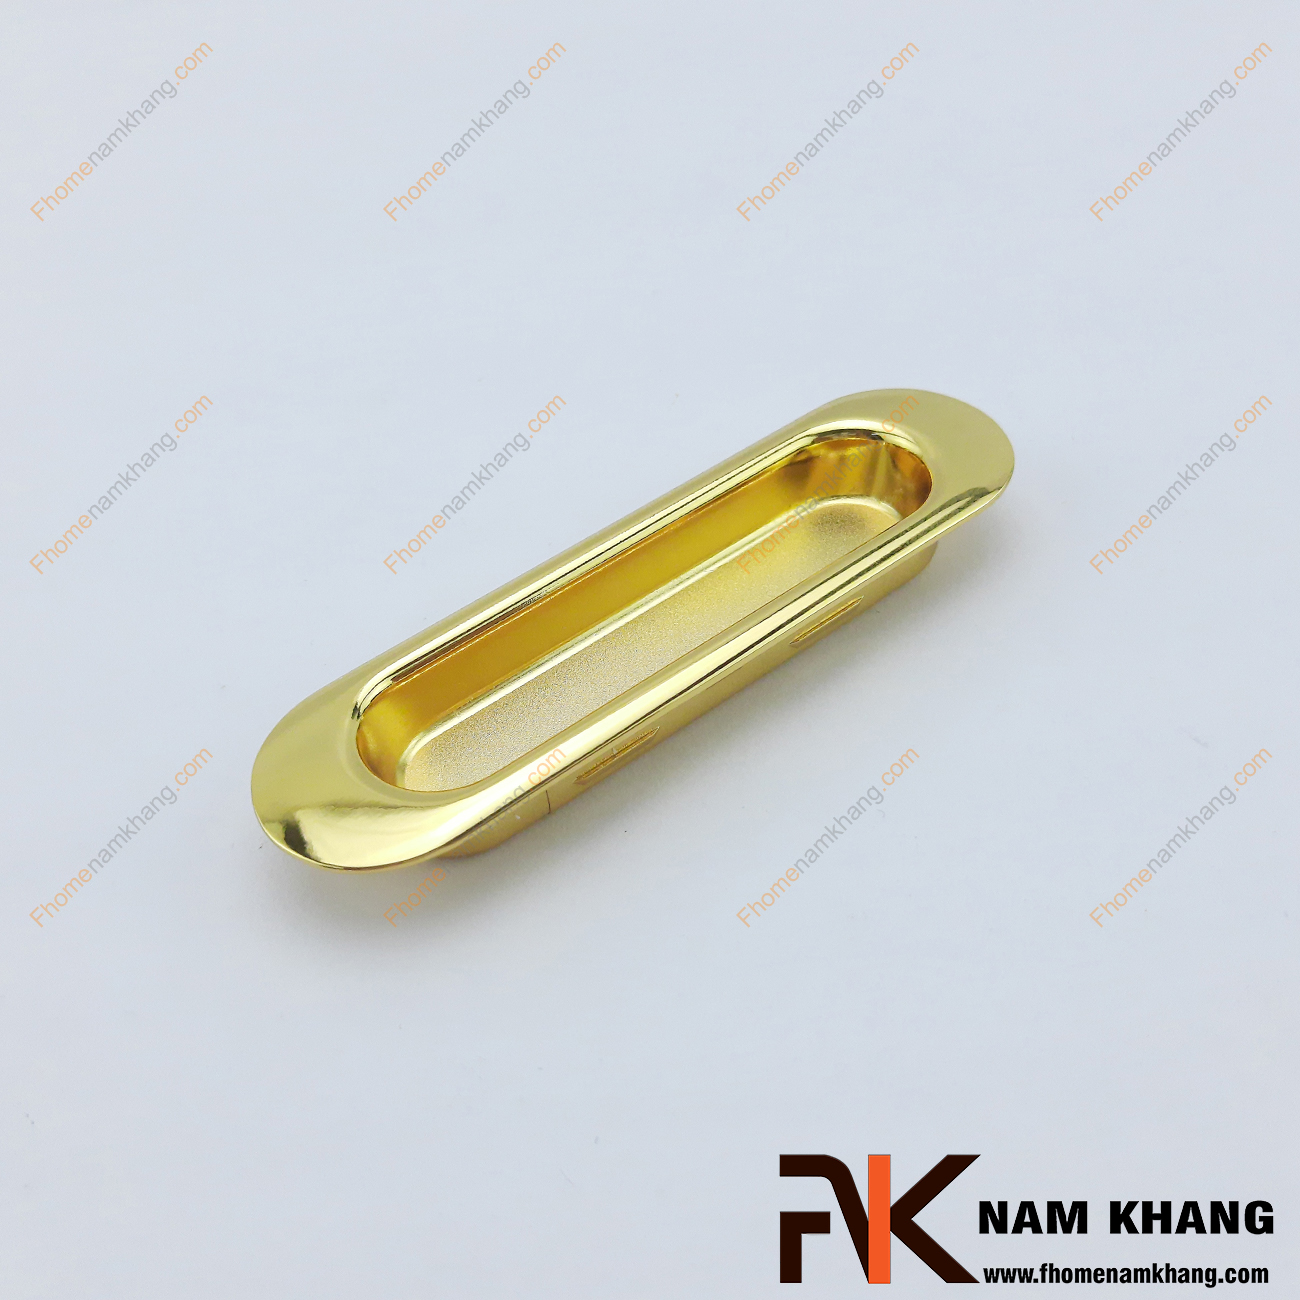 Tay nắm âm tủ hợp kim mạ vàng NK061-V có thiết kế gọn nhẹ và đơn giản. Mang xu hướng tiết kiệm không gian và sử dụng làm phụ kiện cho những phong cách tủ trượt tại nơi bị hạn chế diện tích.